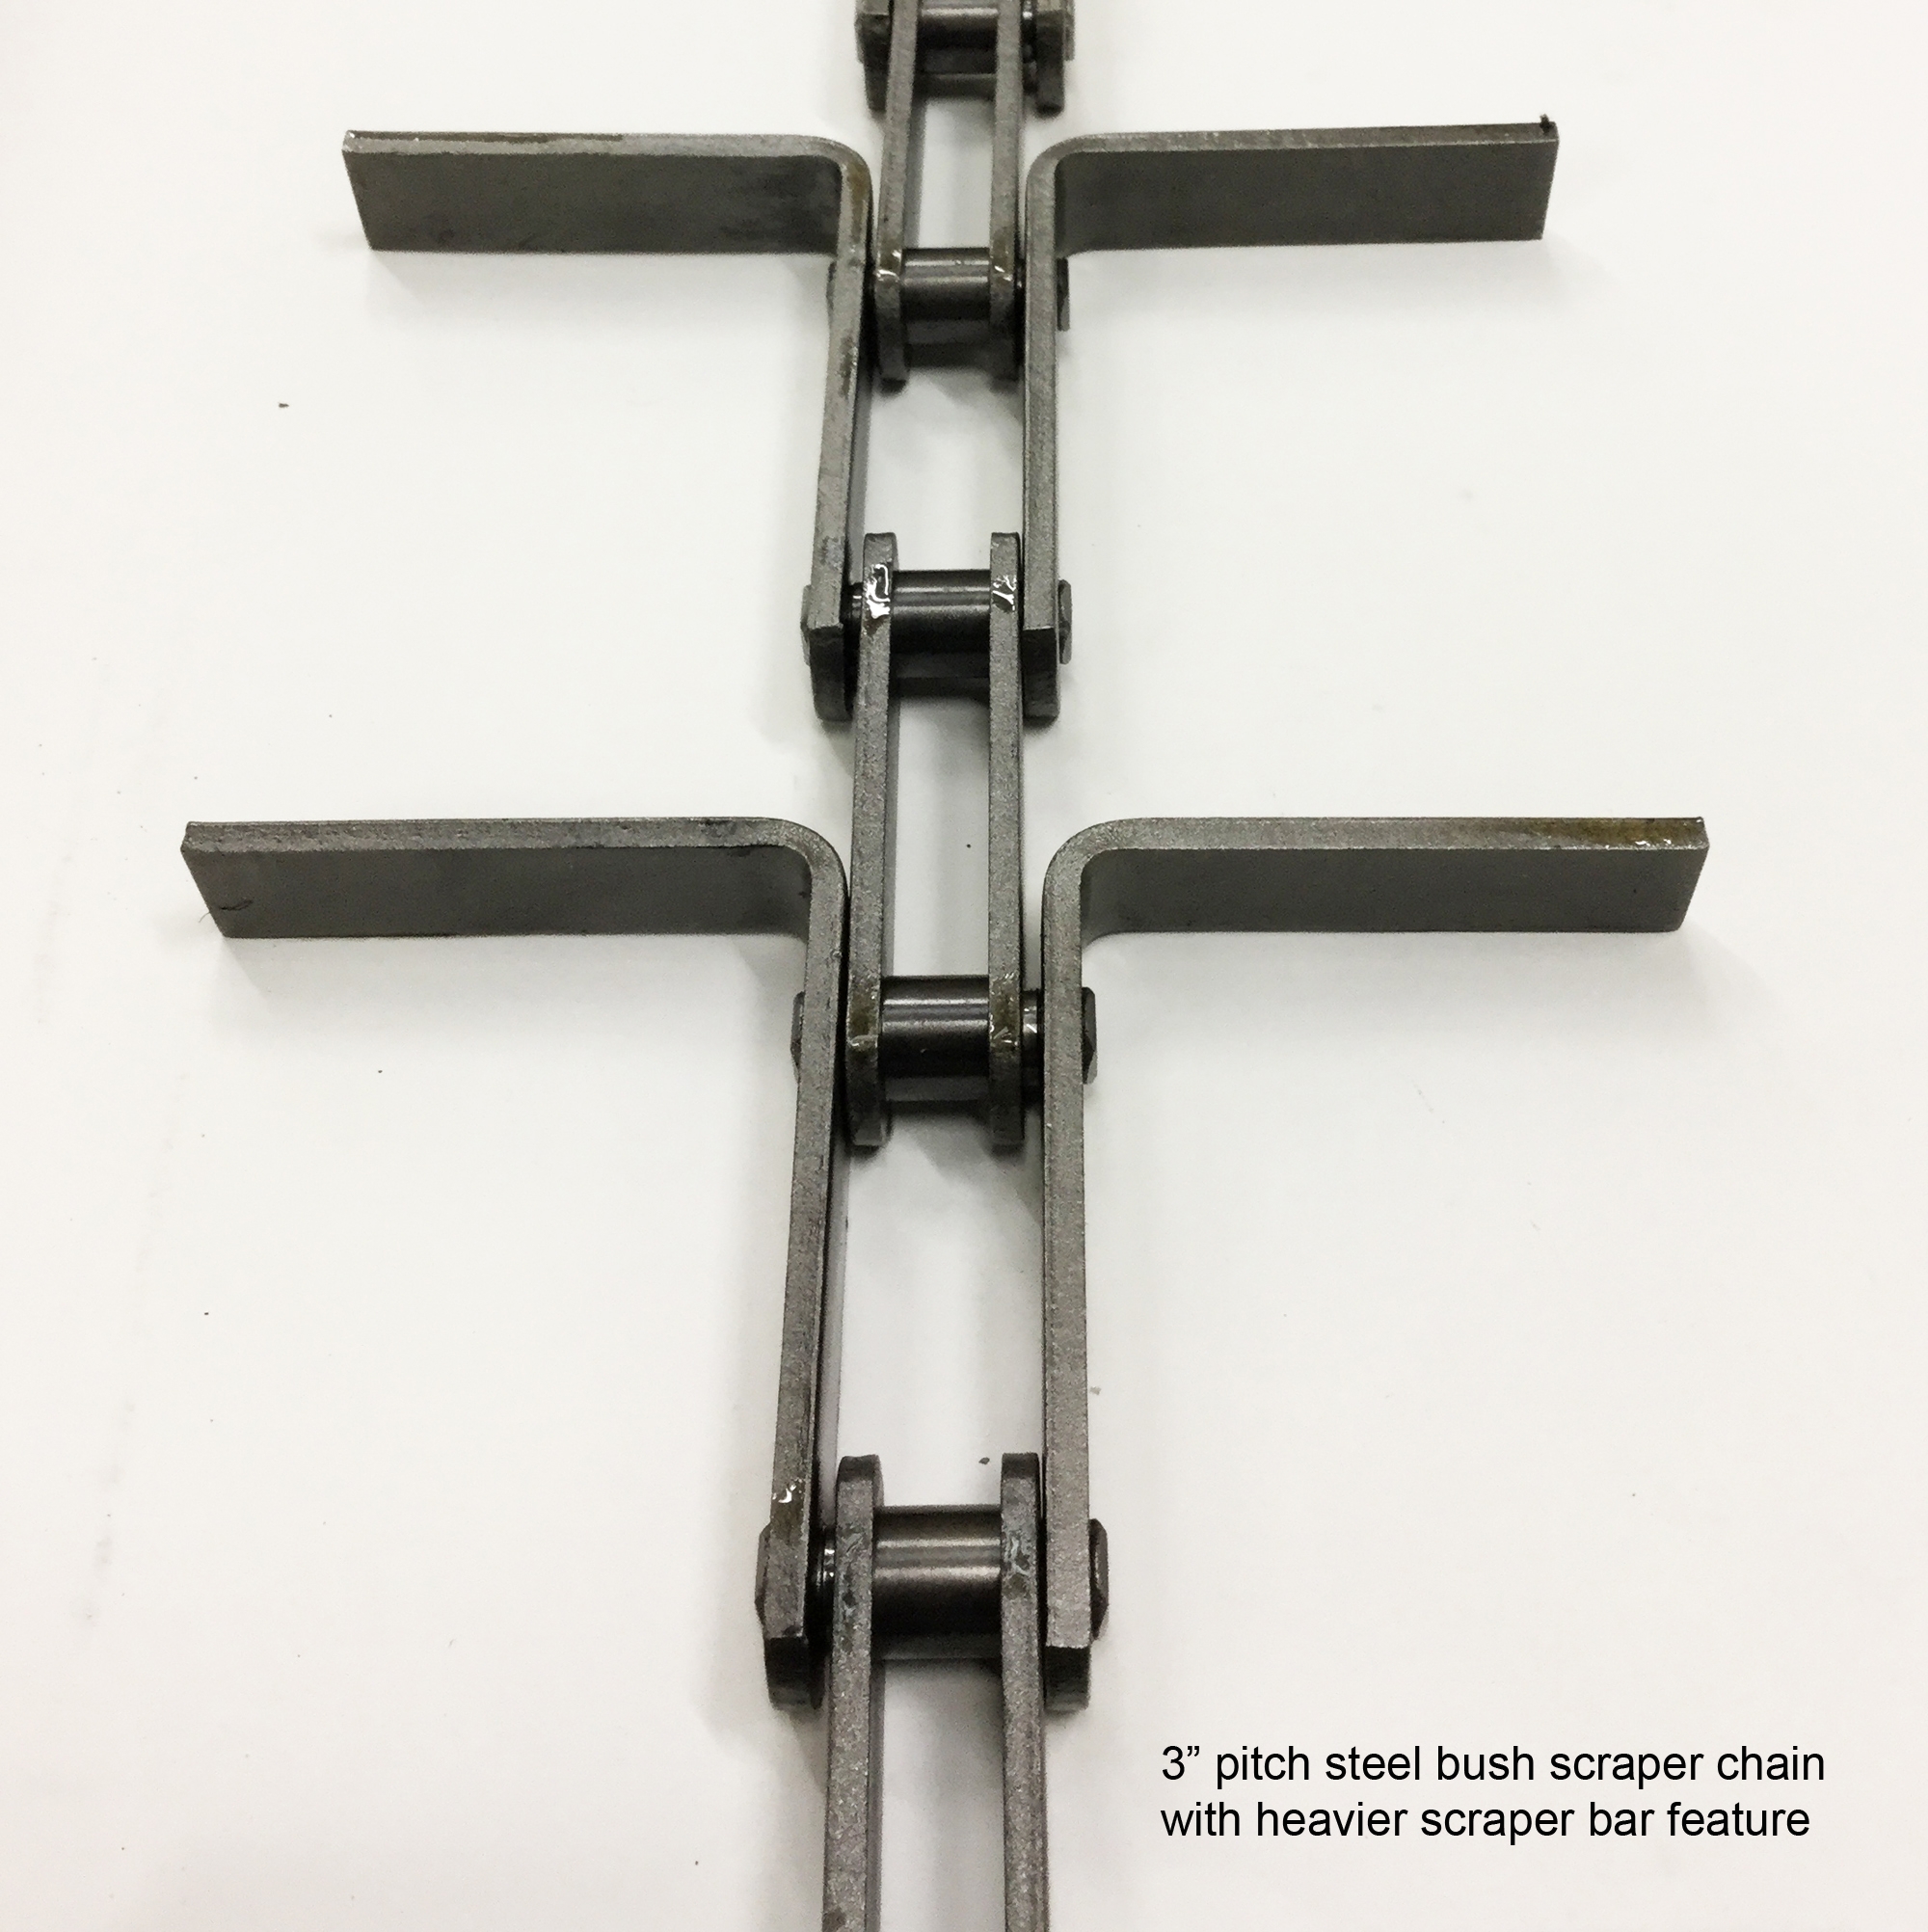 3” pitch steel bush scraper chain with heavier scraper bar feature